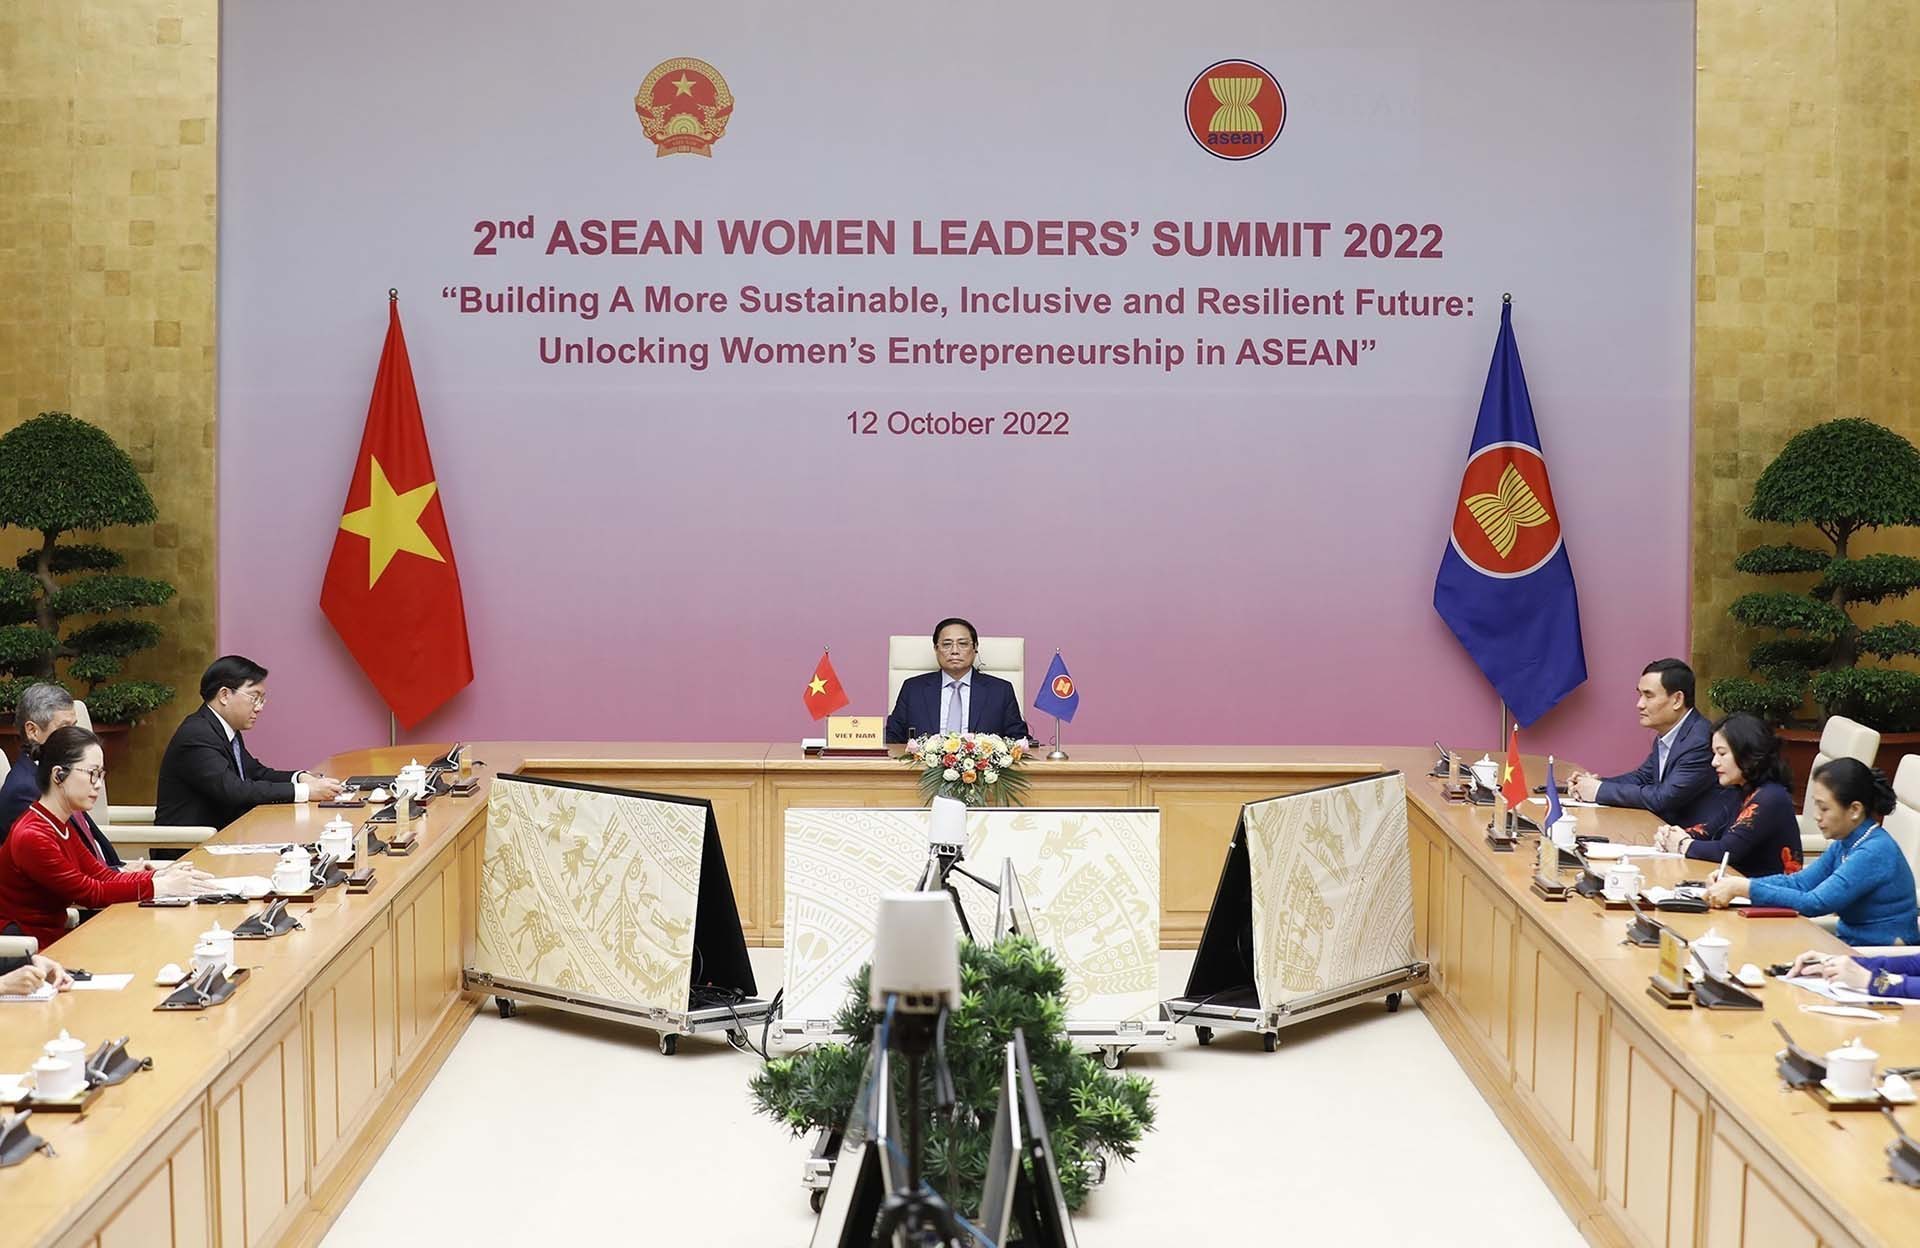 Thủ tướng Phạm Minh Chính dự Phiên toàn thể Hội nghị Thượng đỉnh Lãnh đạo nữ ASEAN lần thứ 2 tại điểm cầu Hà Nội. (Nguồn: TTXVN)